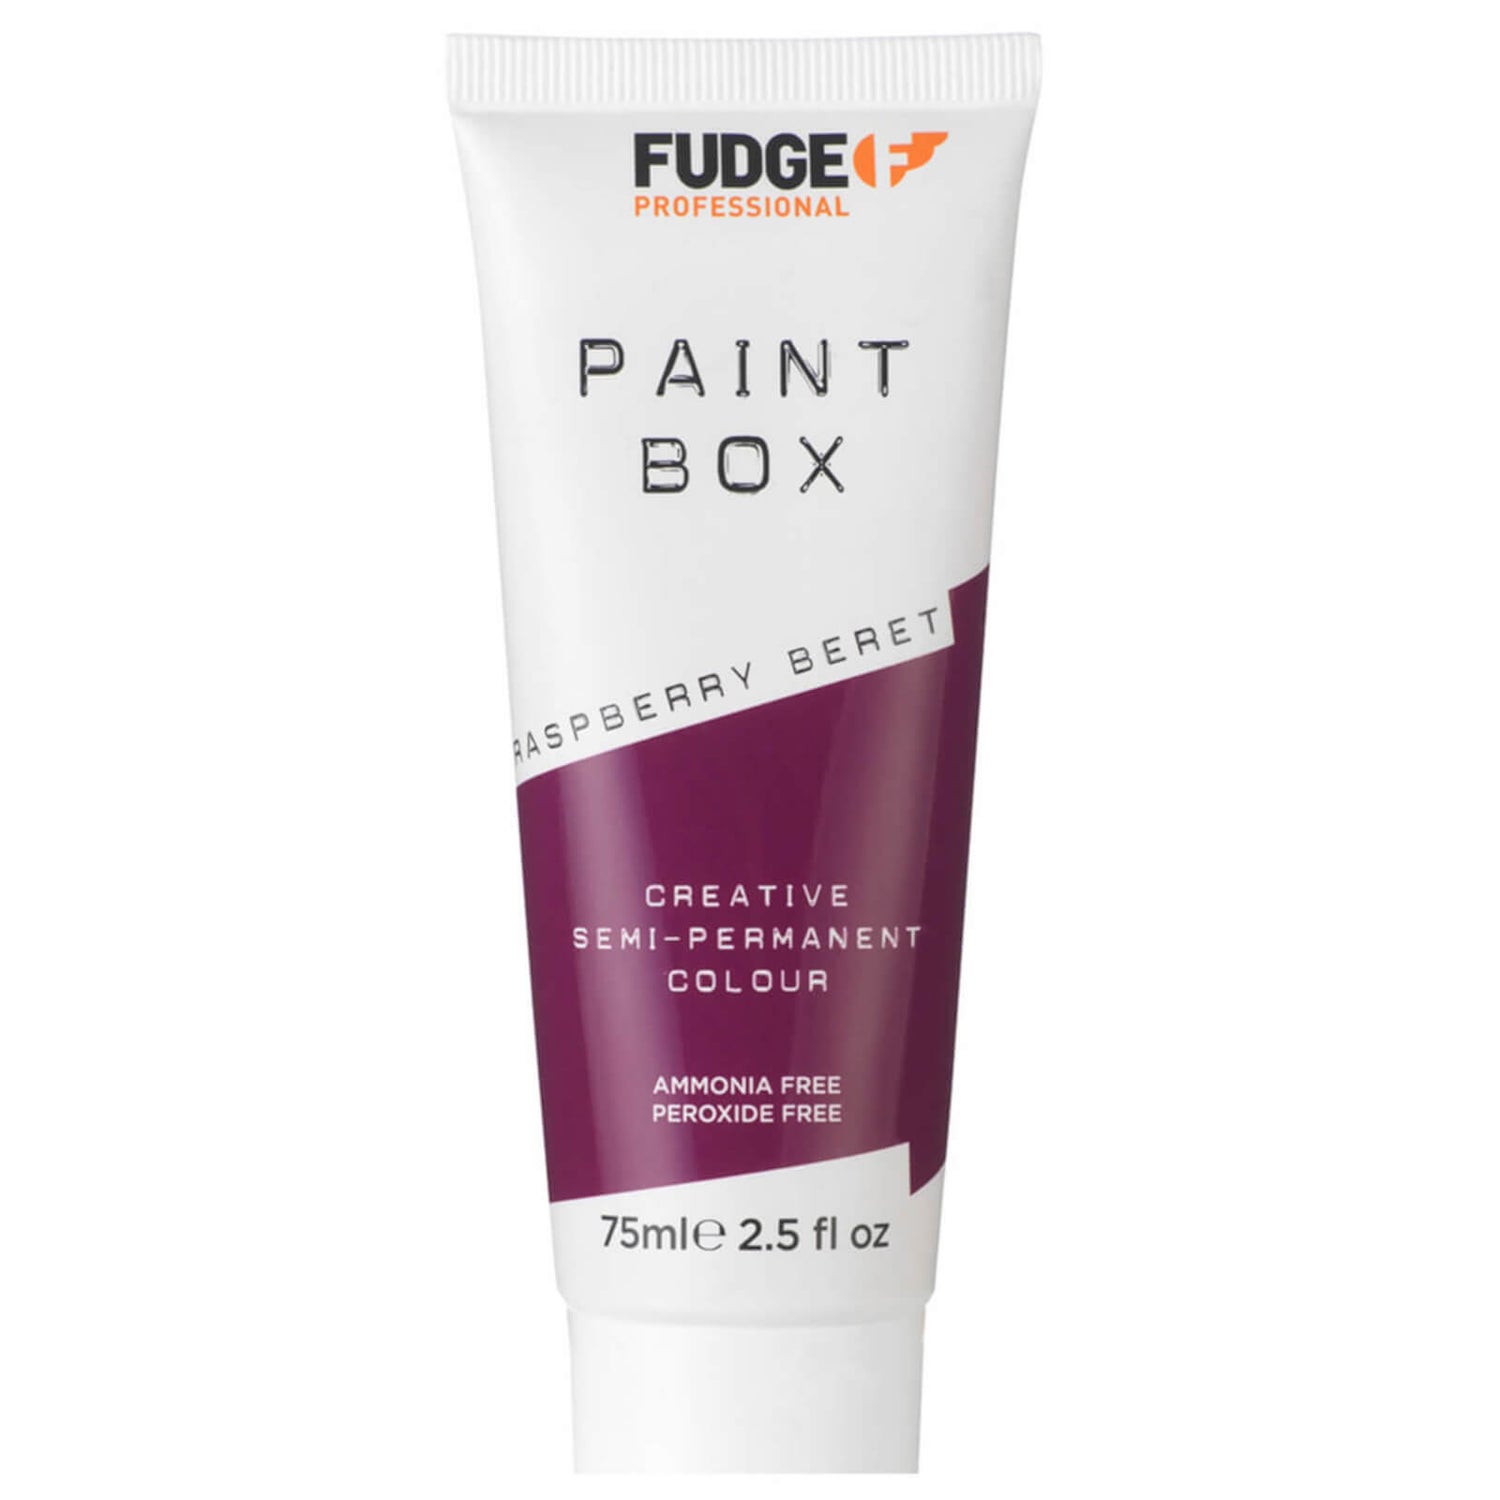 Fudge Paintbox Hair Colorant 75ml - Raspberry Berry